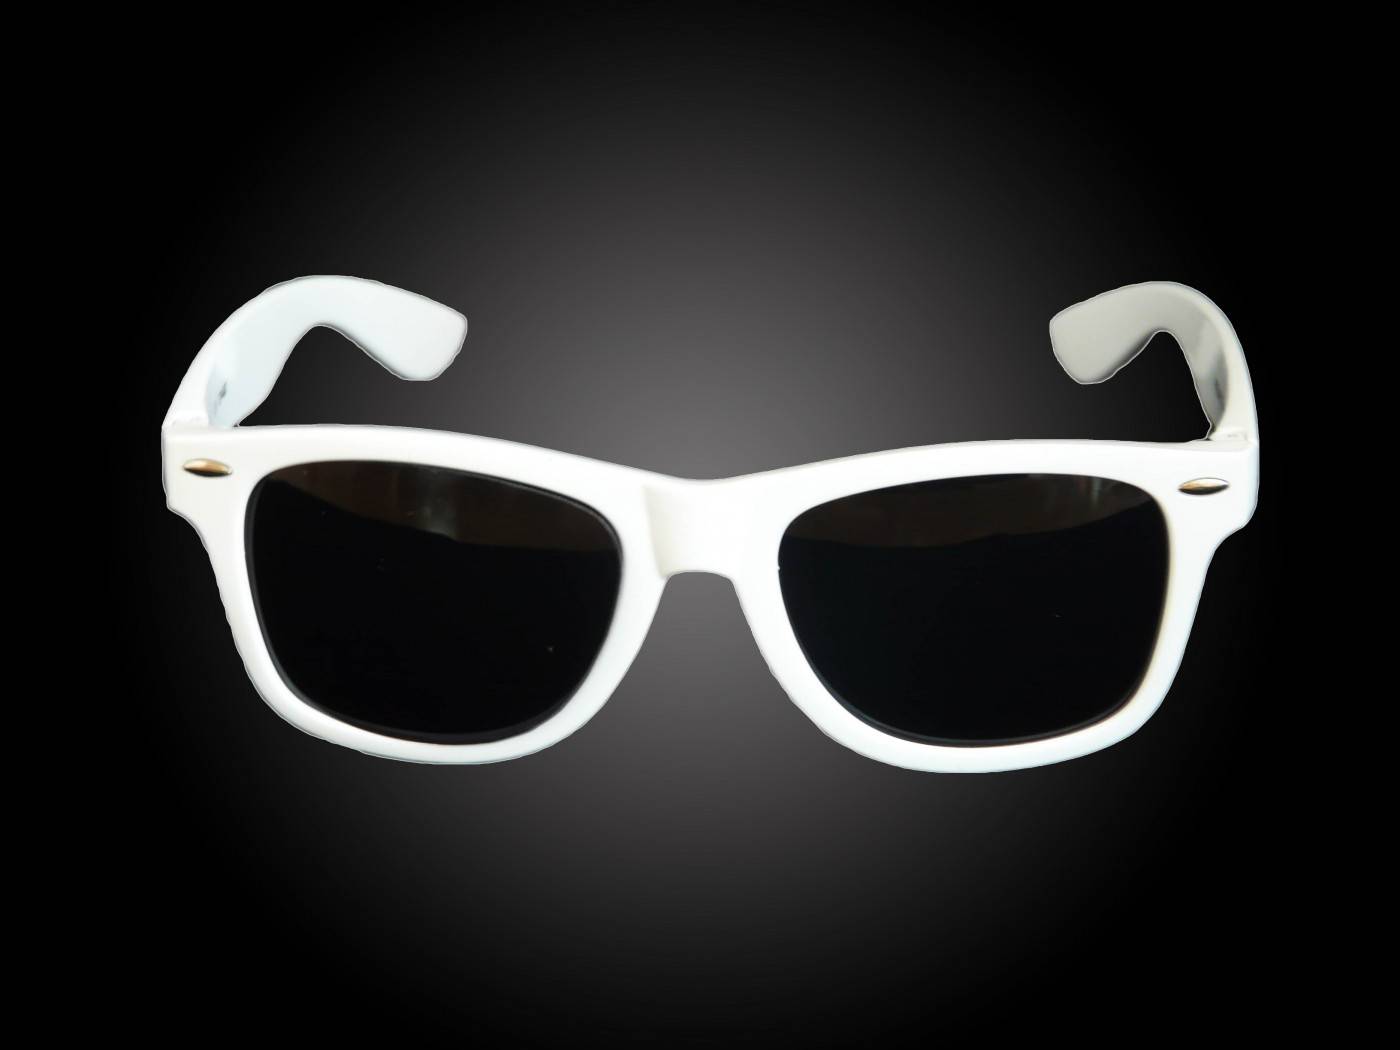 Bedruk zonnebrillen met logo